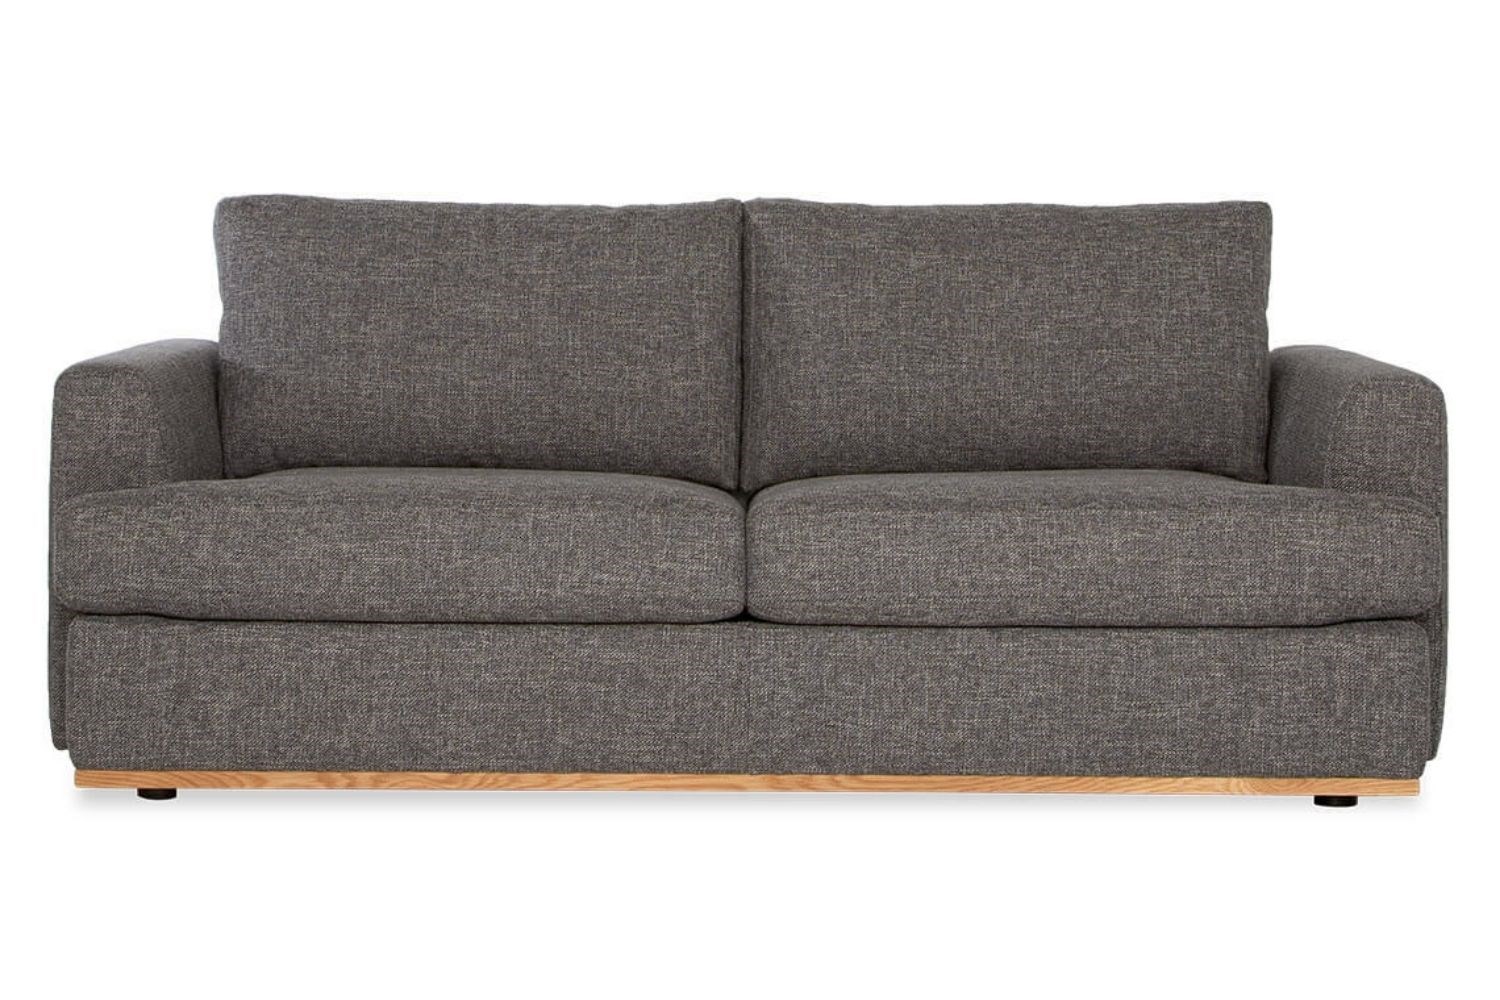 best value sofa bed australia